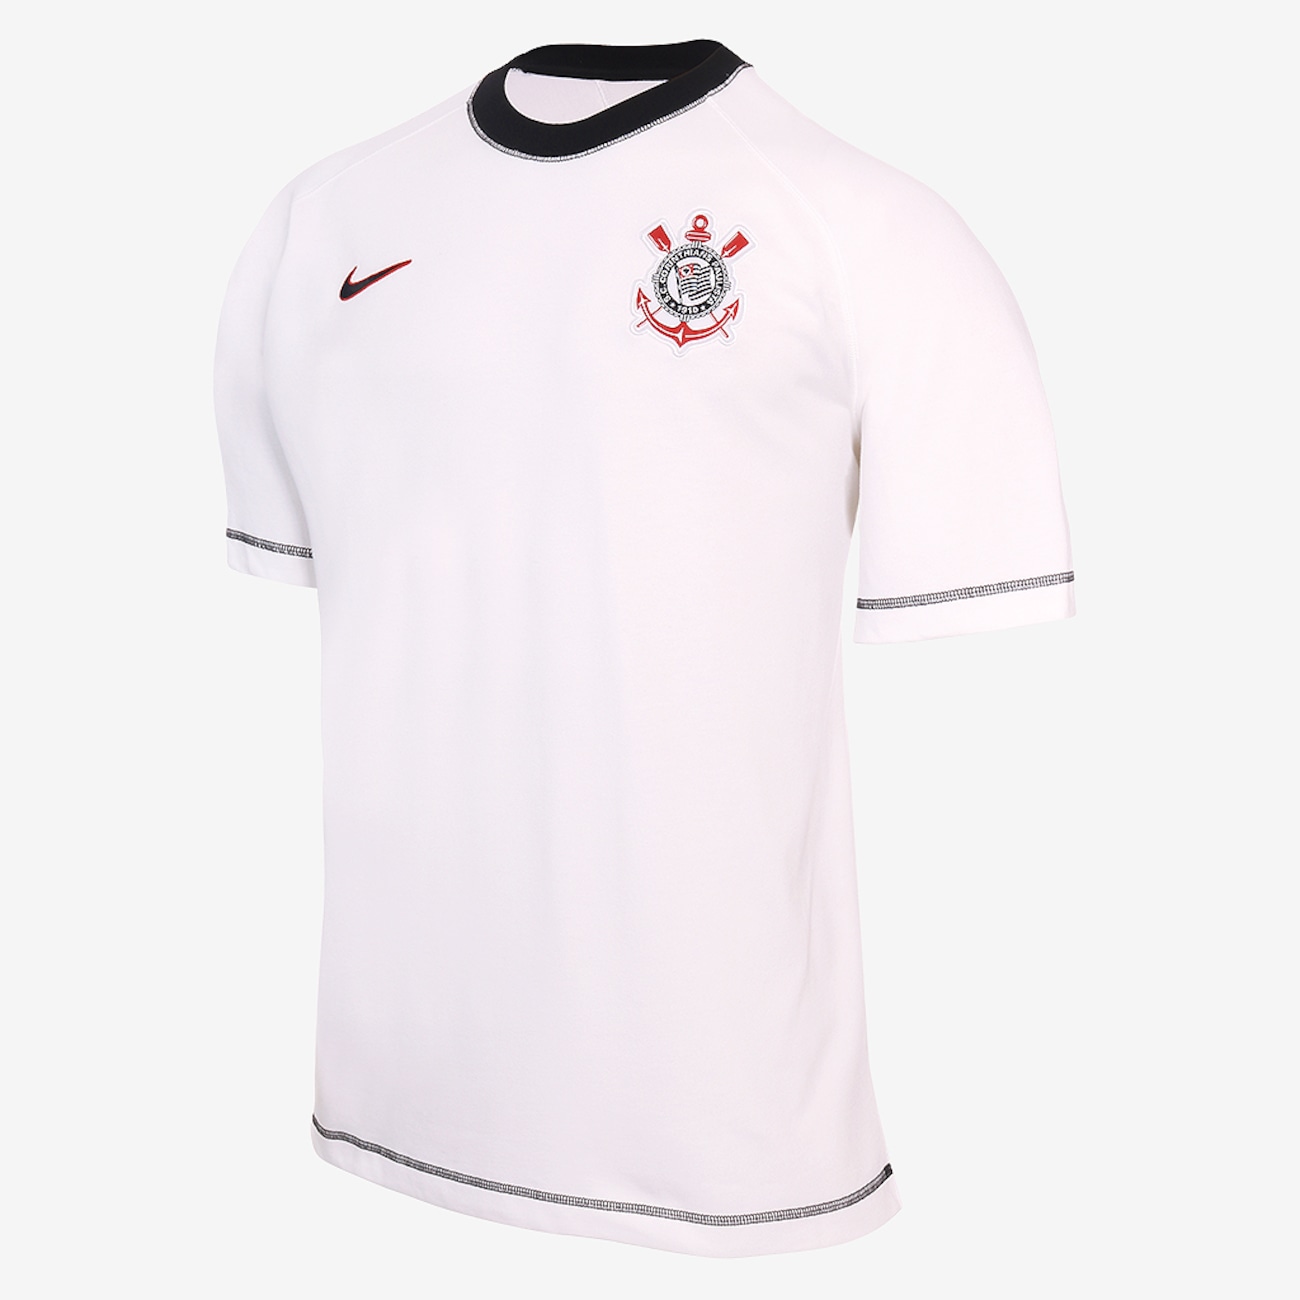 Camiseta Nike Corinthians Travel Masculina